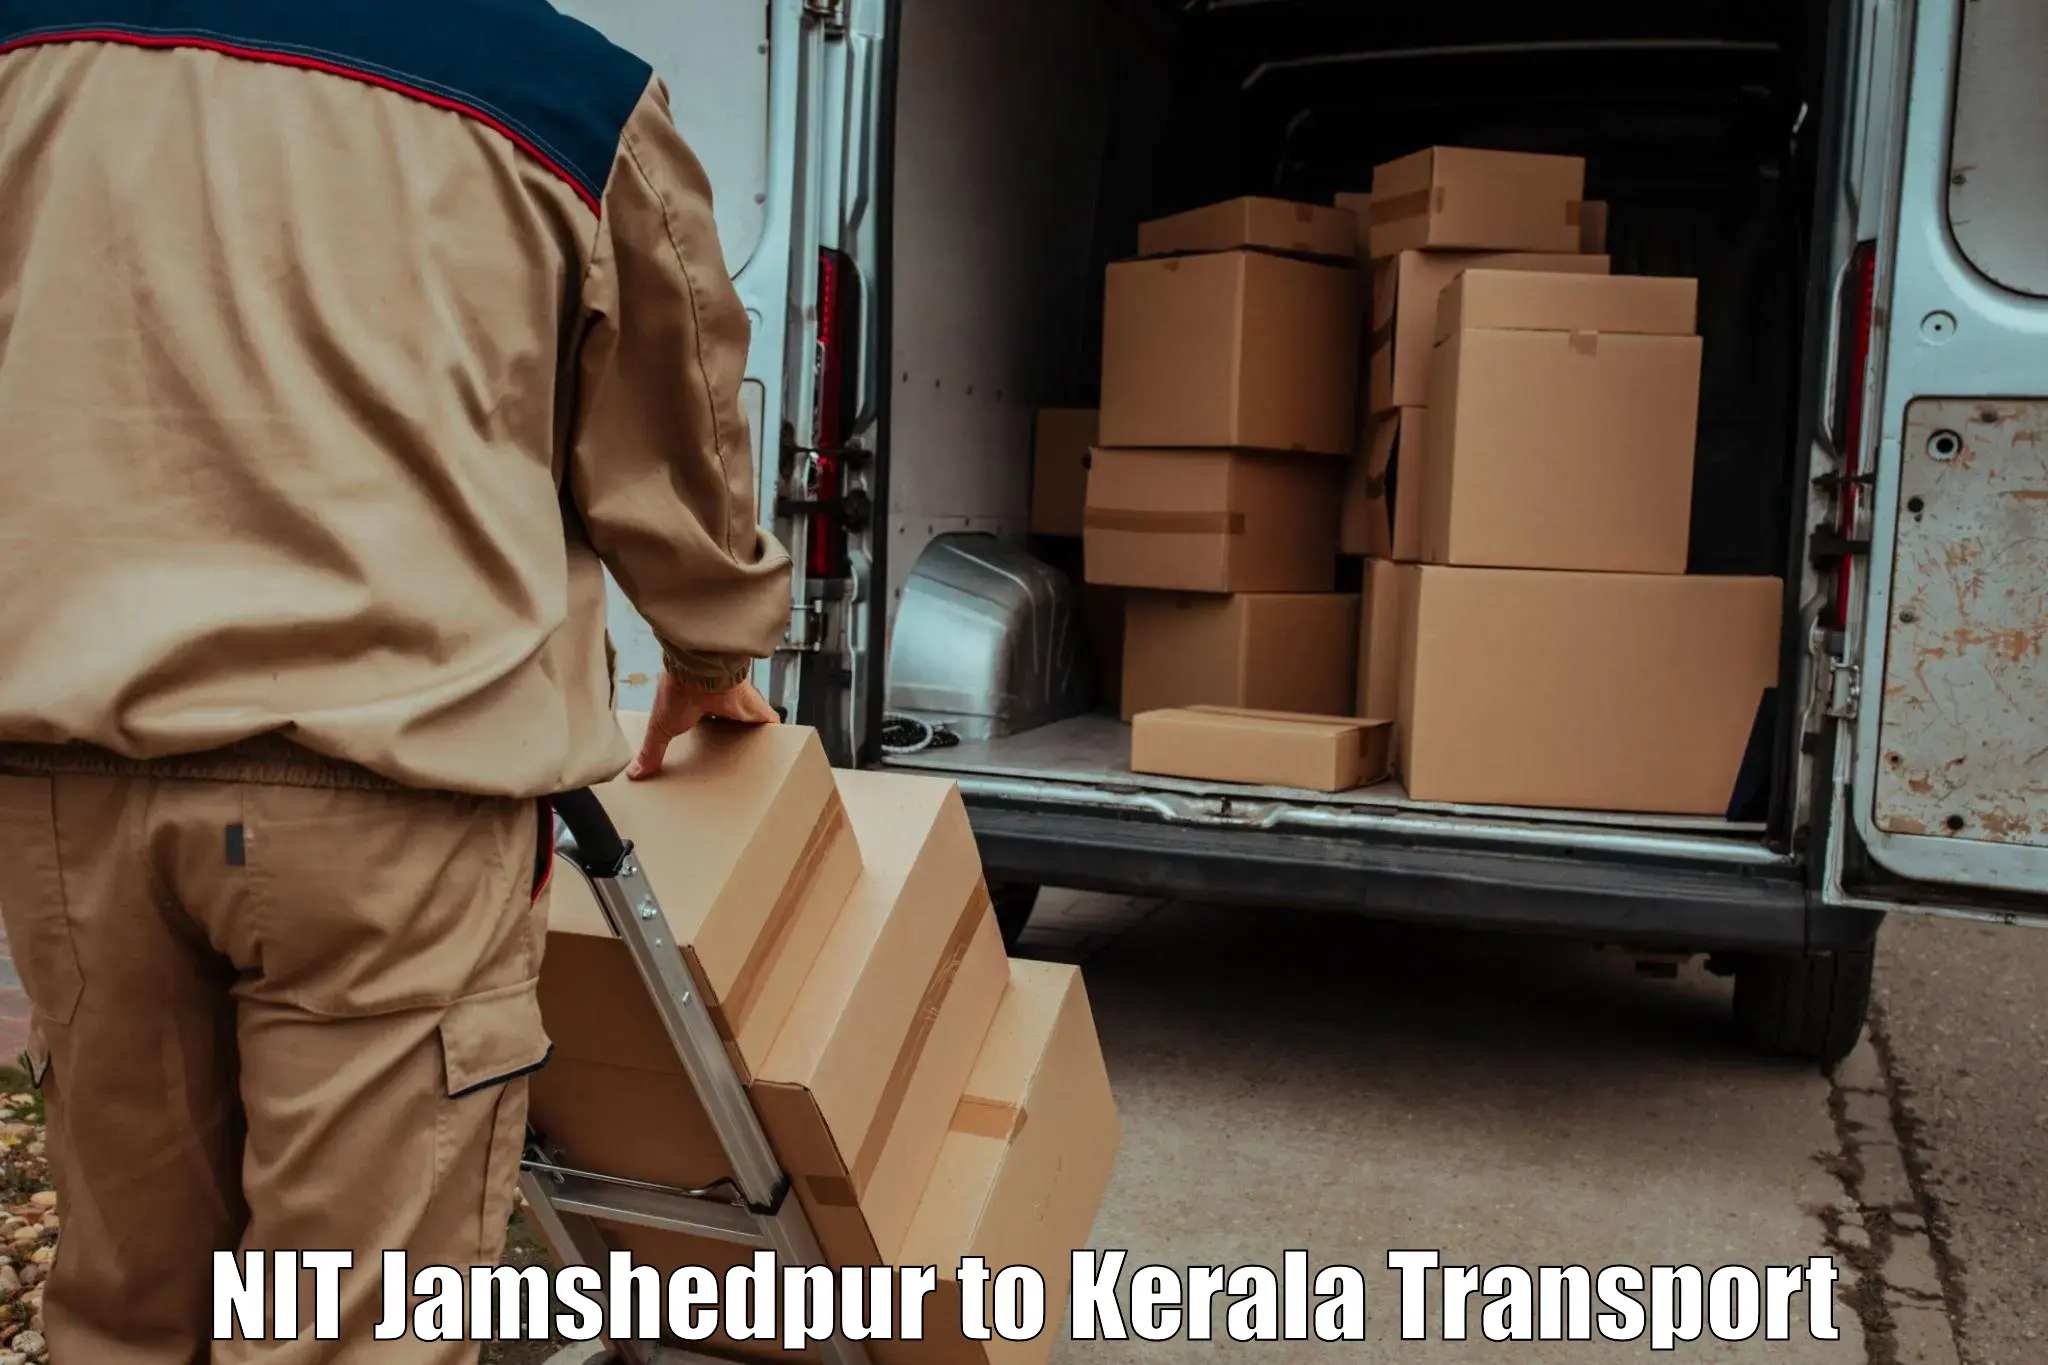 Interstate transport services NIT Jamshedpur to Kozhikode